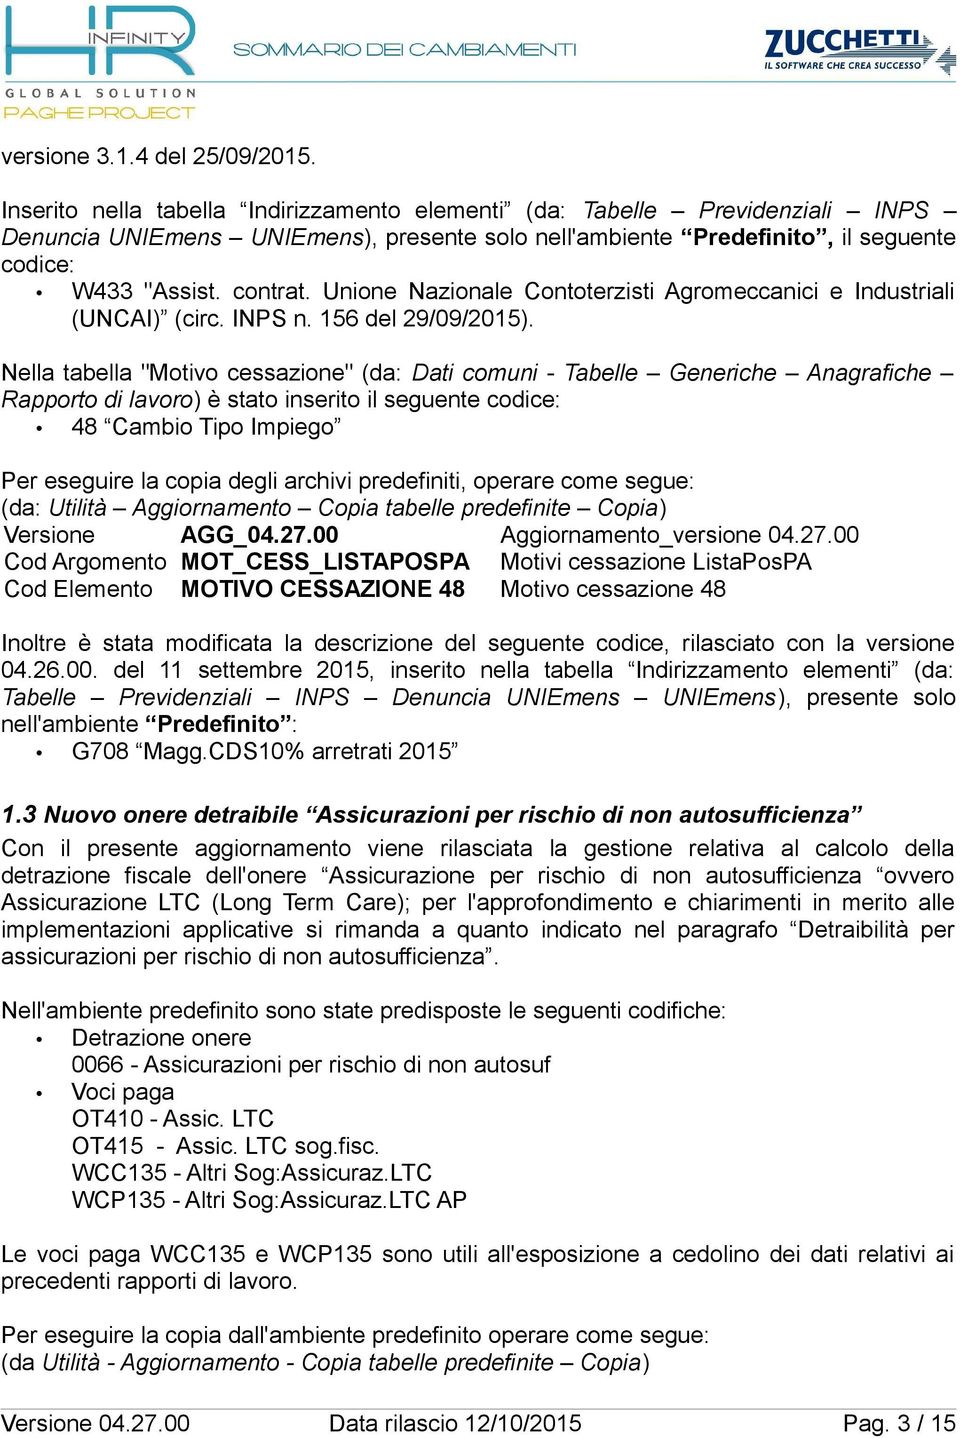 Unione Nazionale Contoterzisti Agromeccanici e Industriali (UNCAI) (circ. INPS n. 156 del 29/09/2015).